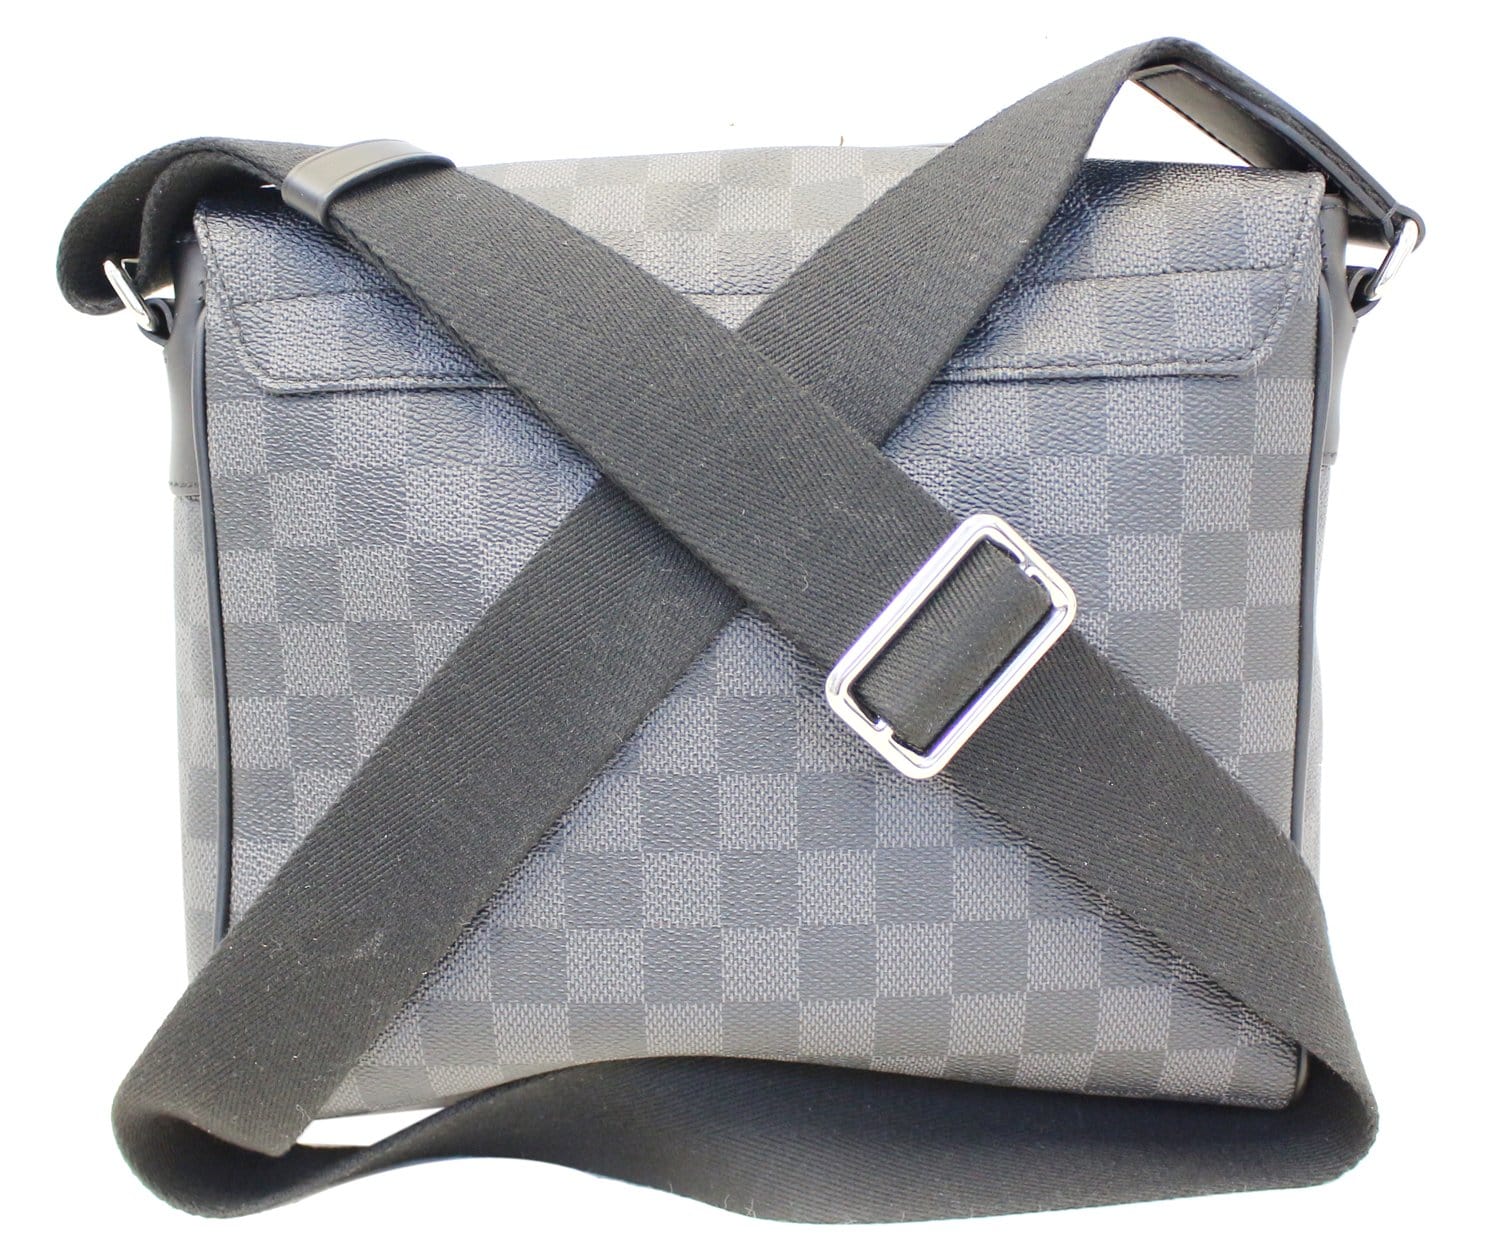 Louis Vuitton Graphite Damier District PM Crossbody Bag For Sale